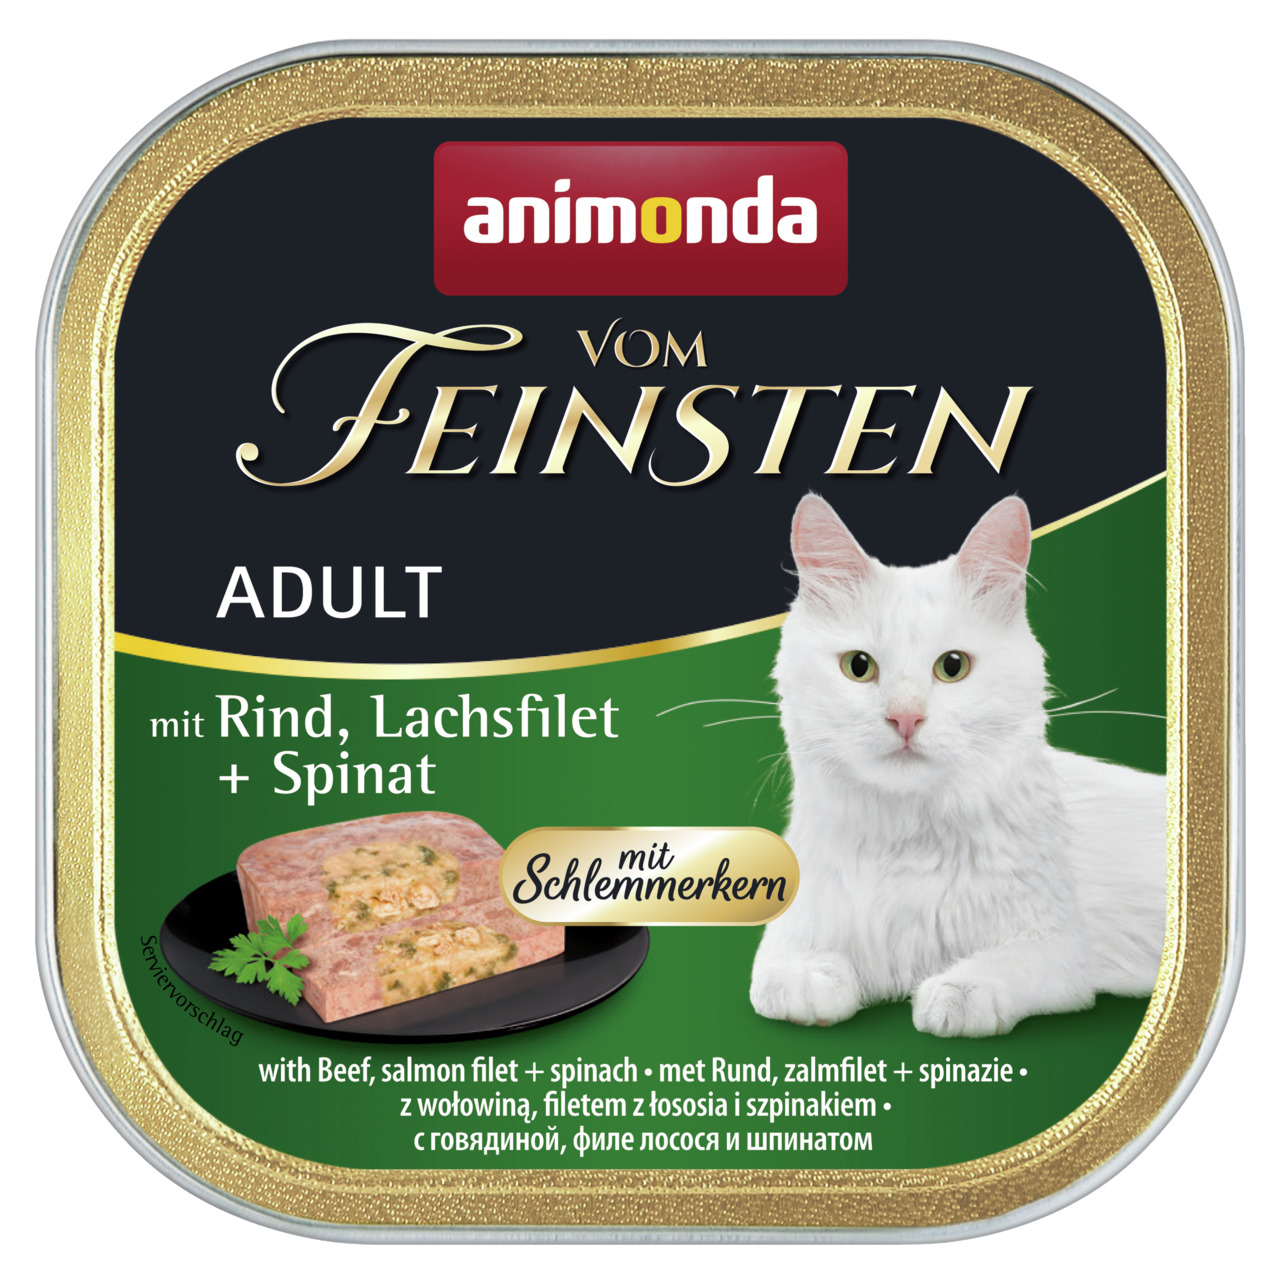 Animonda vom Feinsten Adult mit Rind, Lachsfilet + Spinat mit Schlemmerkern Katzen Nassfutter 100 g